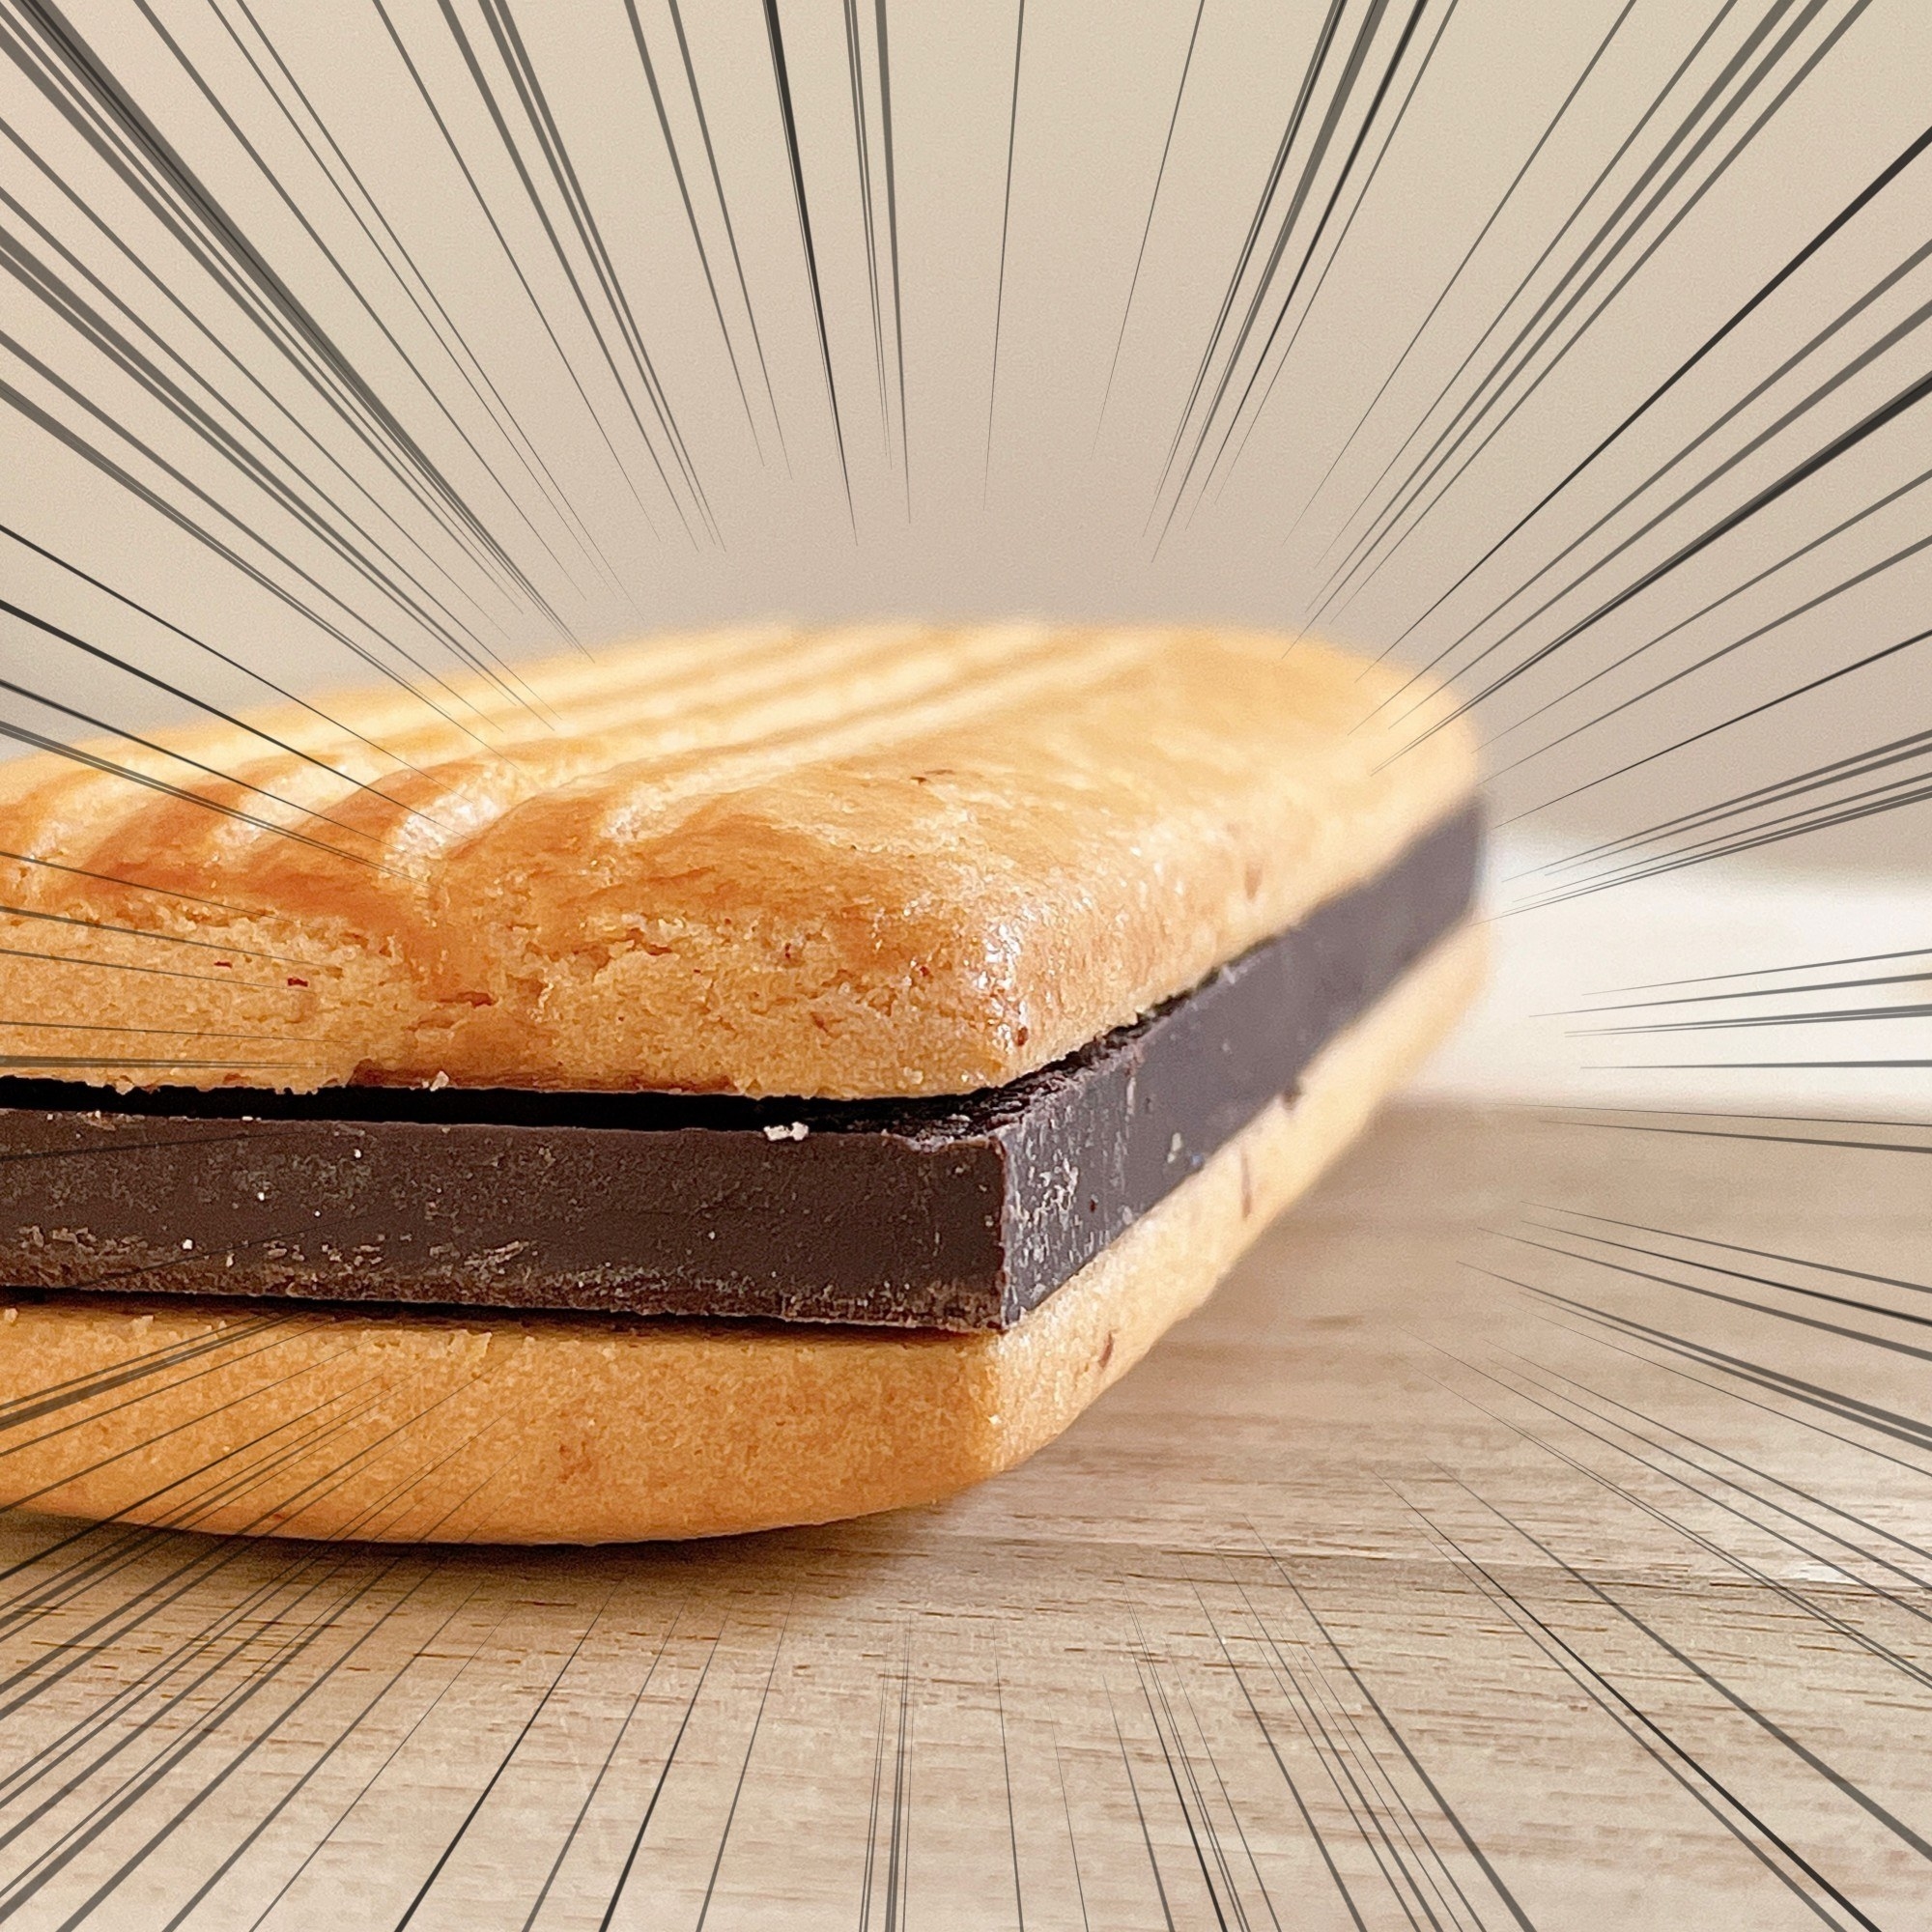 無印良品の激うまおかし「ビターチョコサンドクッキー」